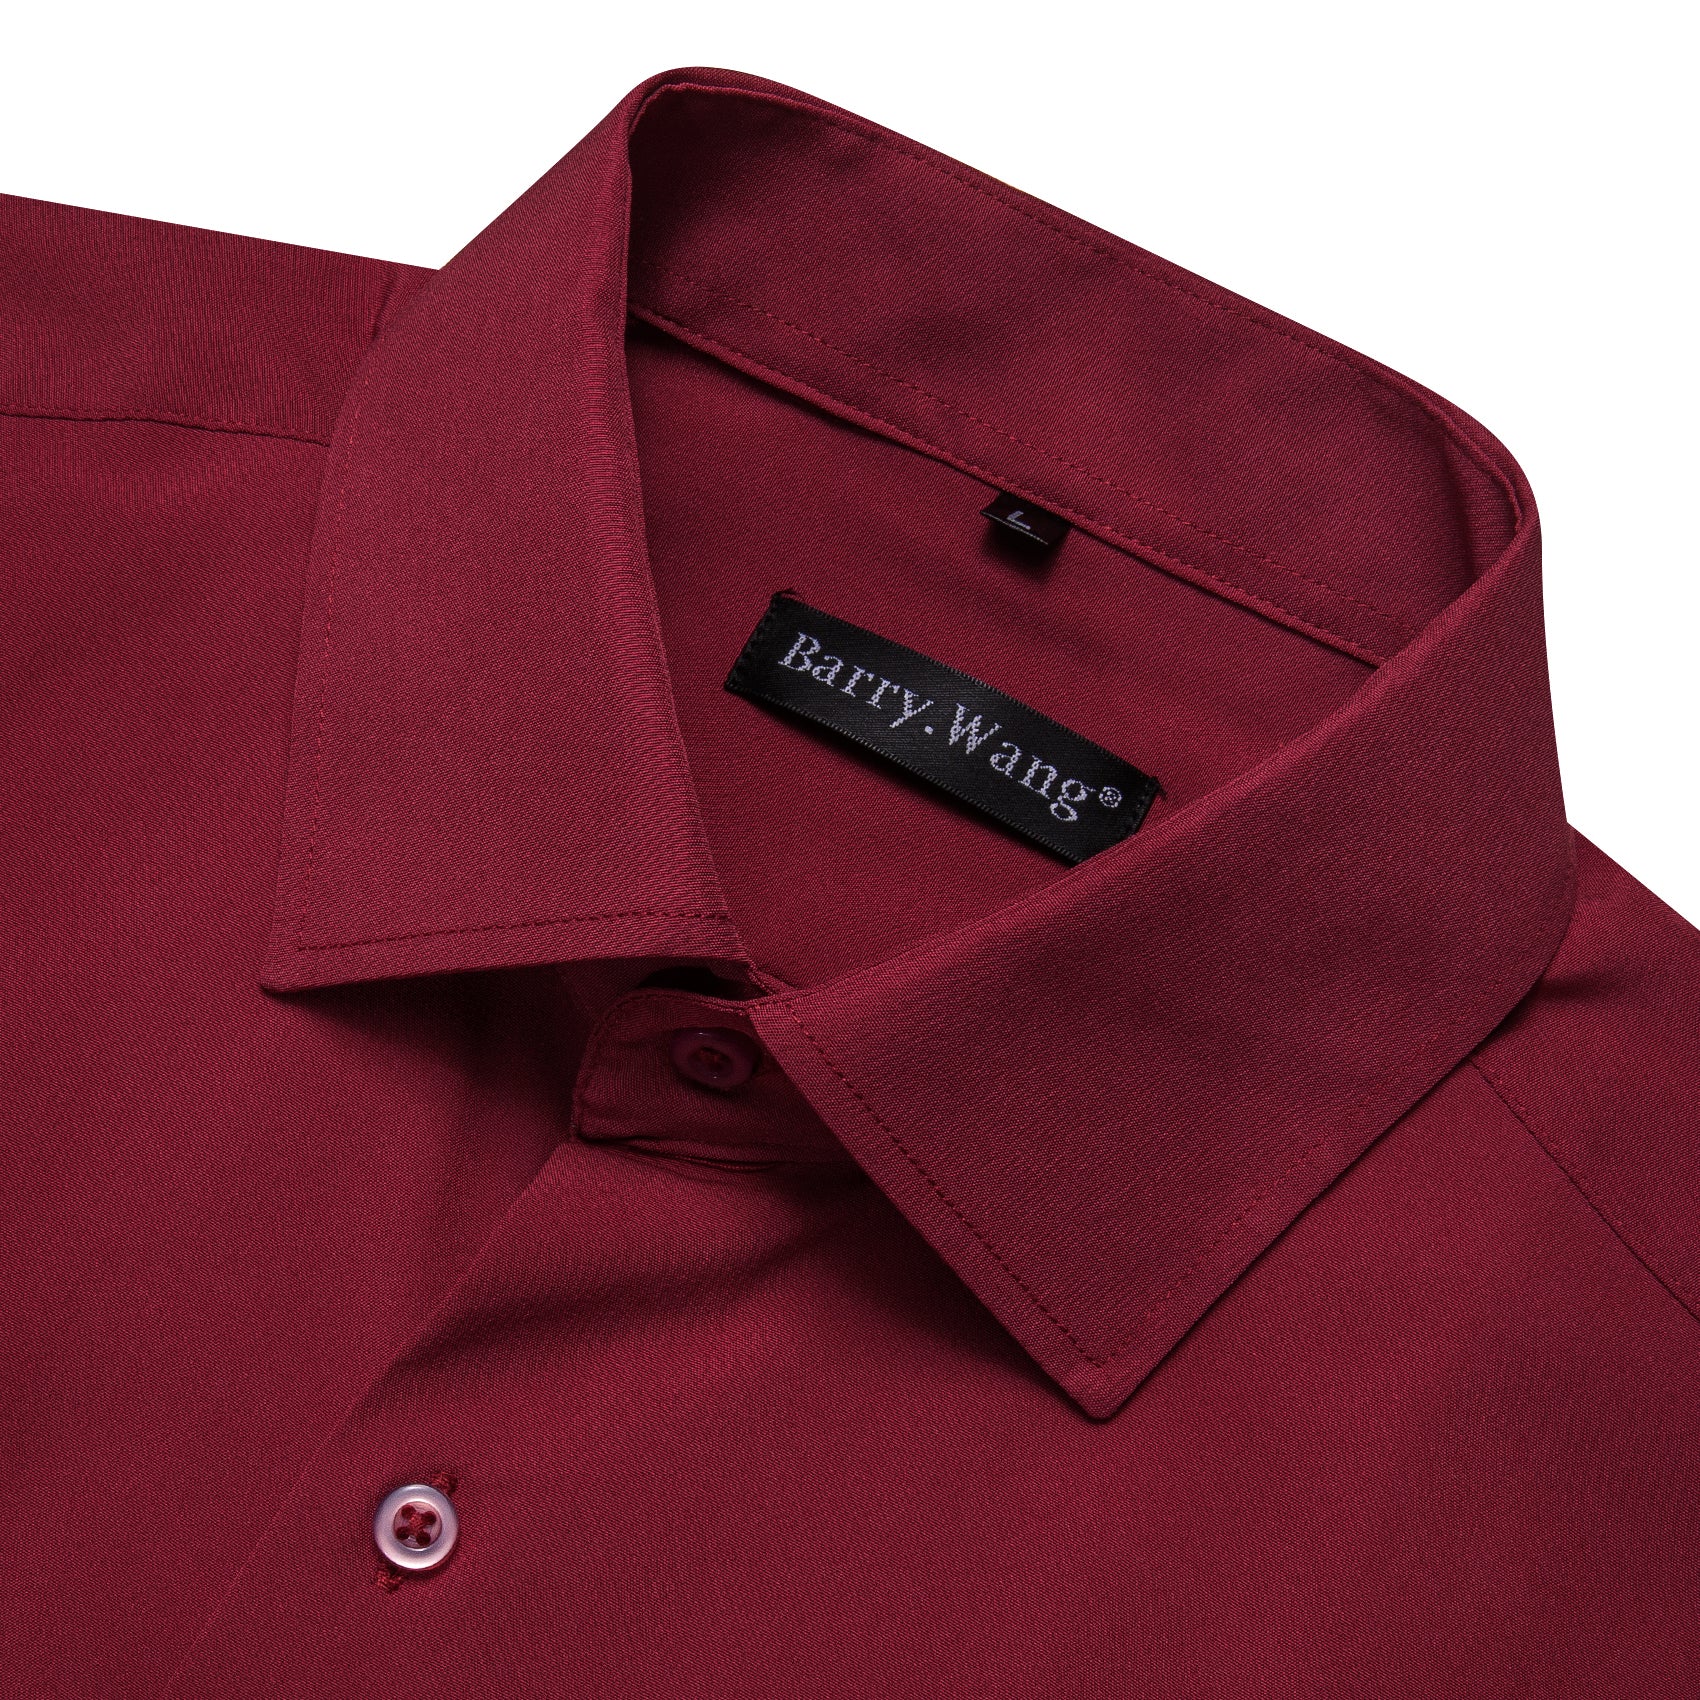 Barry.wang Dark Red Solid Silk Shirt